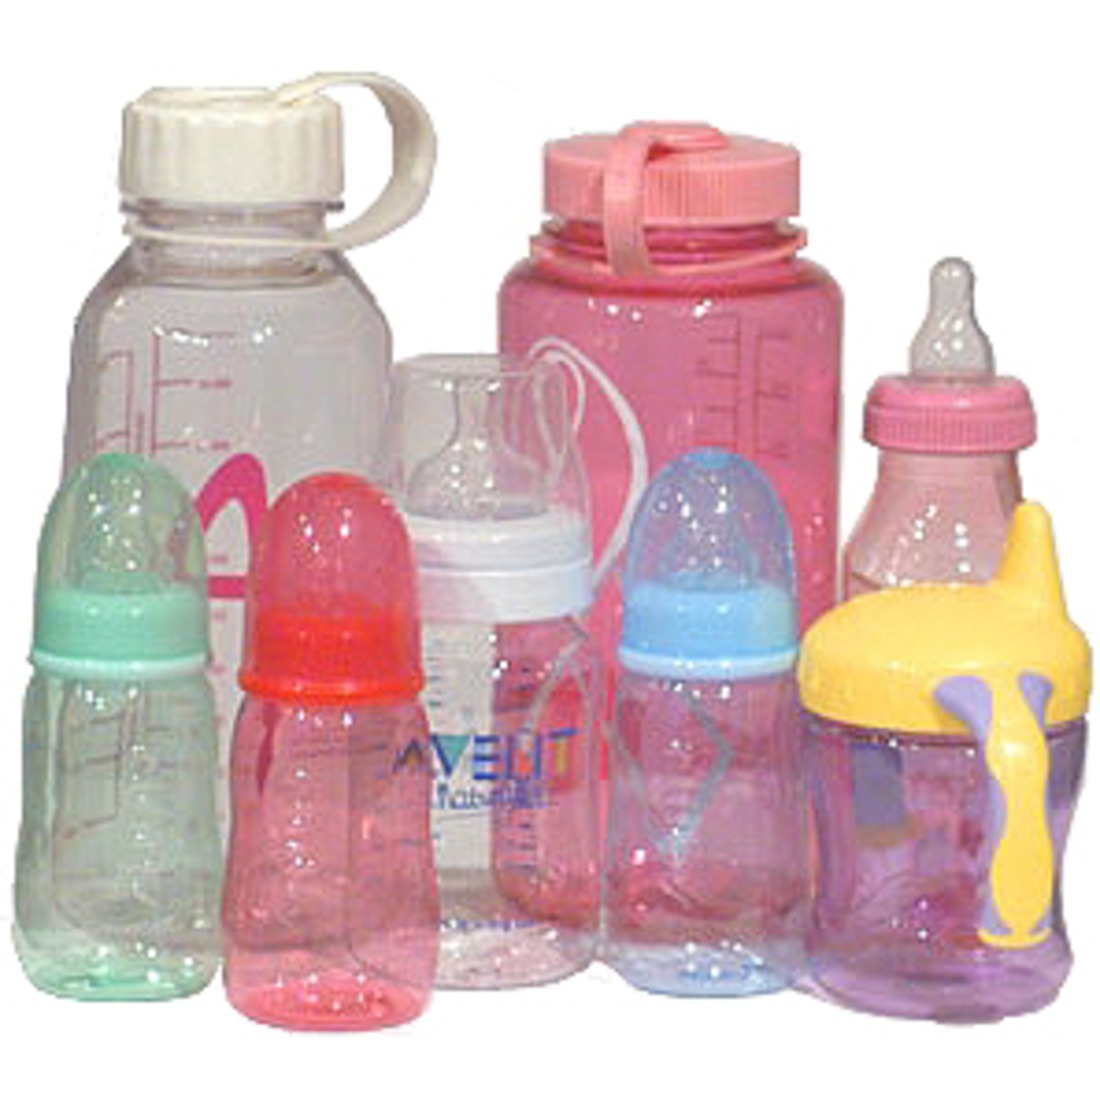 Бутылочка с друзьями. Бутылочка детская Bisphenol a. Пластиковые бутылочки для детей. Детские пластмассовые бутылочки. Деткая бутылочка Пластишка.